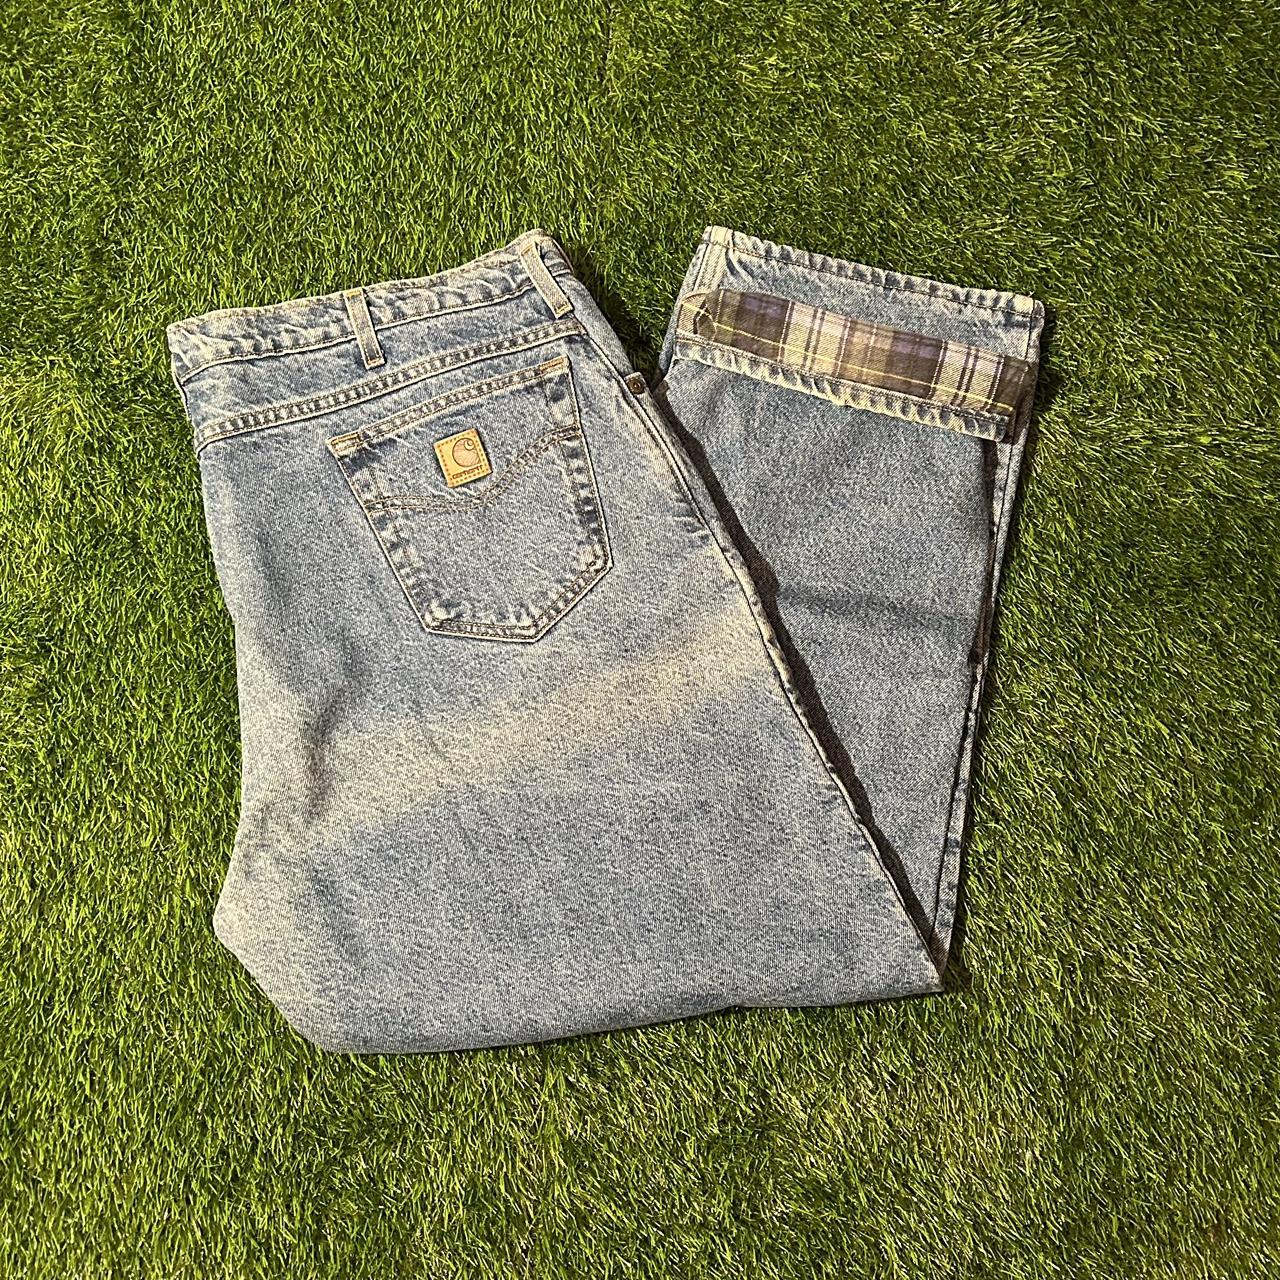 Vintage Flannel Lined Carhartt Jeans Super Nice... - Depop